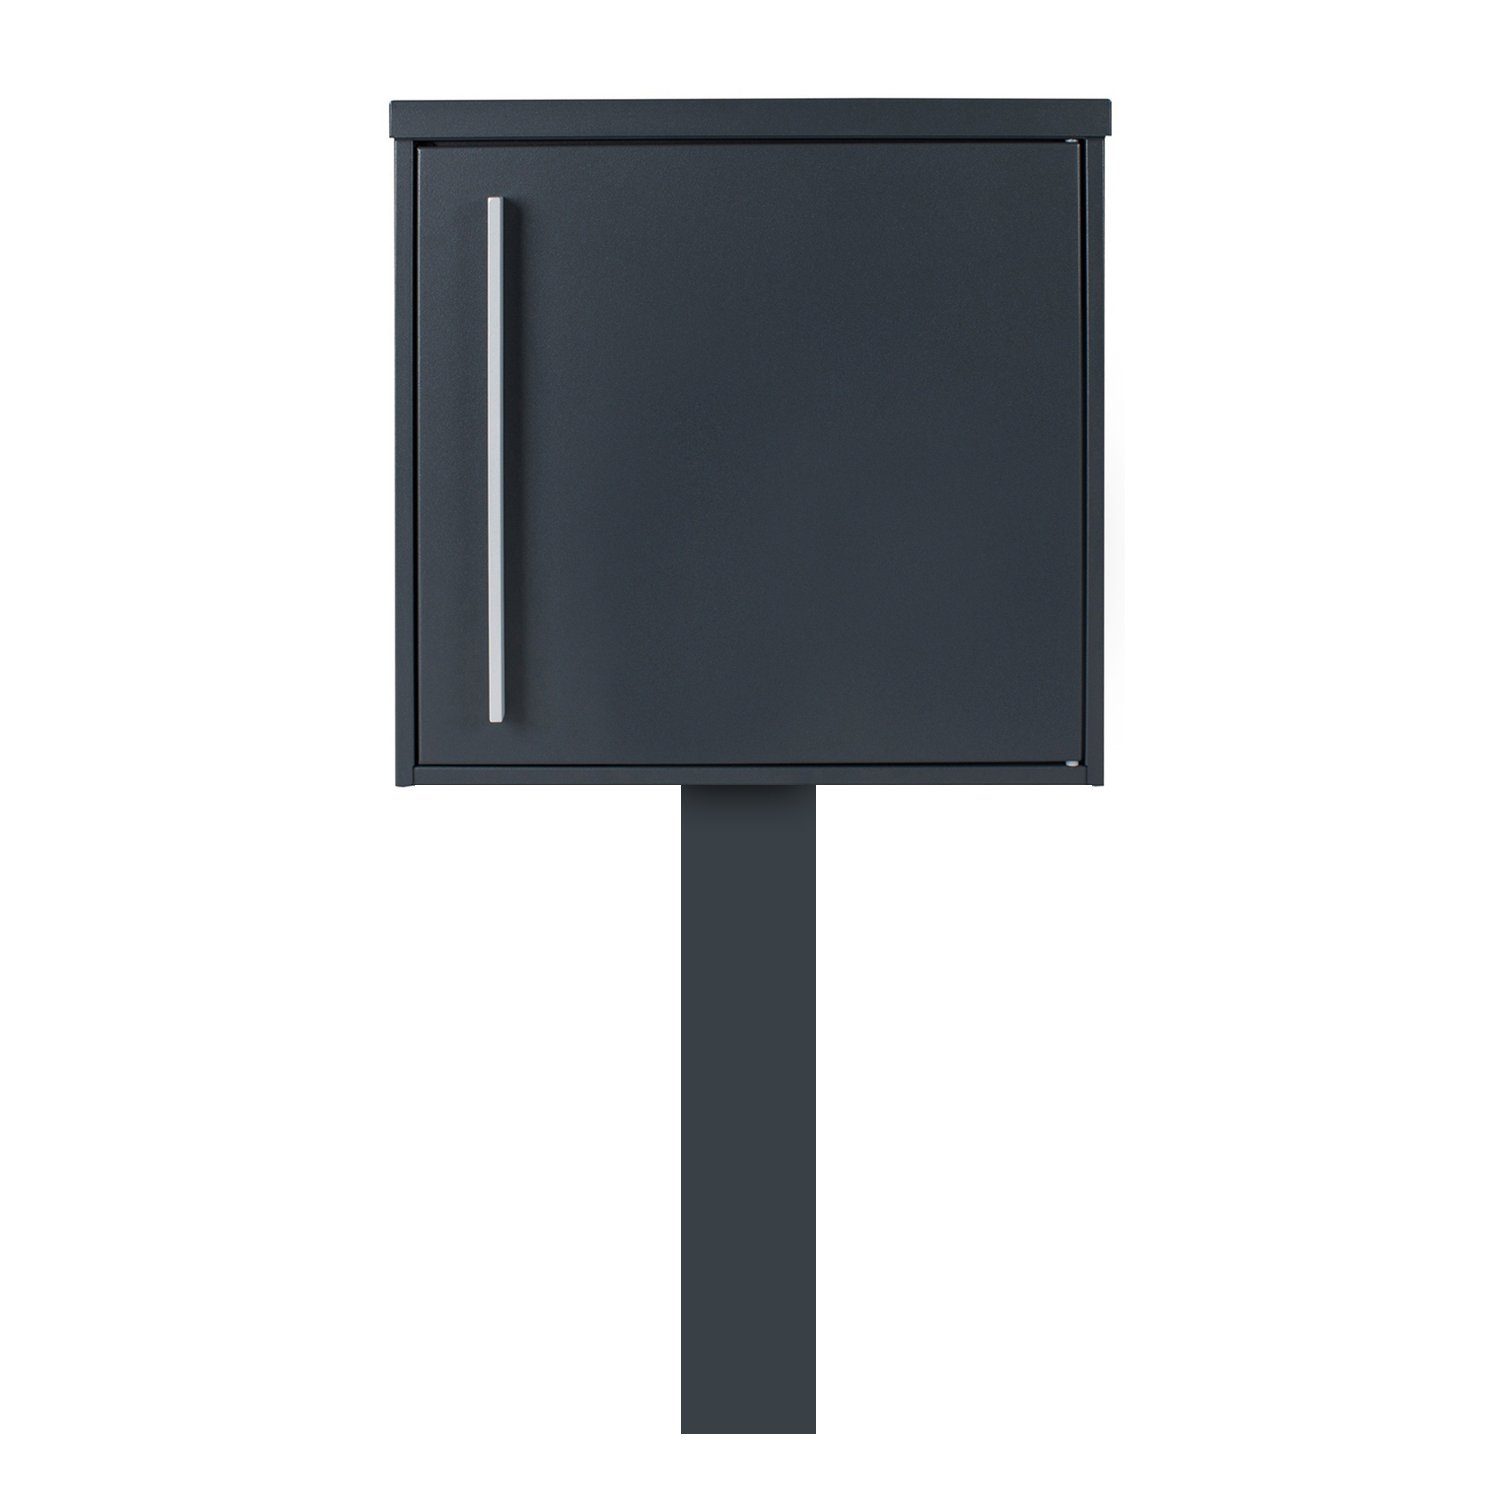 MOCAVI Briefkasten MOCAVI Sbox 101r b Standbriefkasten anthrazit-grau (RAL  7016) Design-Postkasten freistehend mit Pfosten (betonieren), Türanschlag  rechts